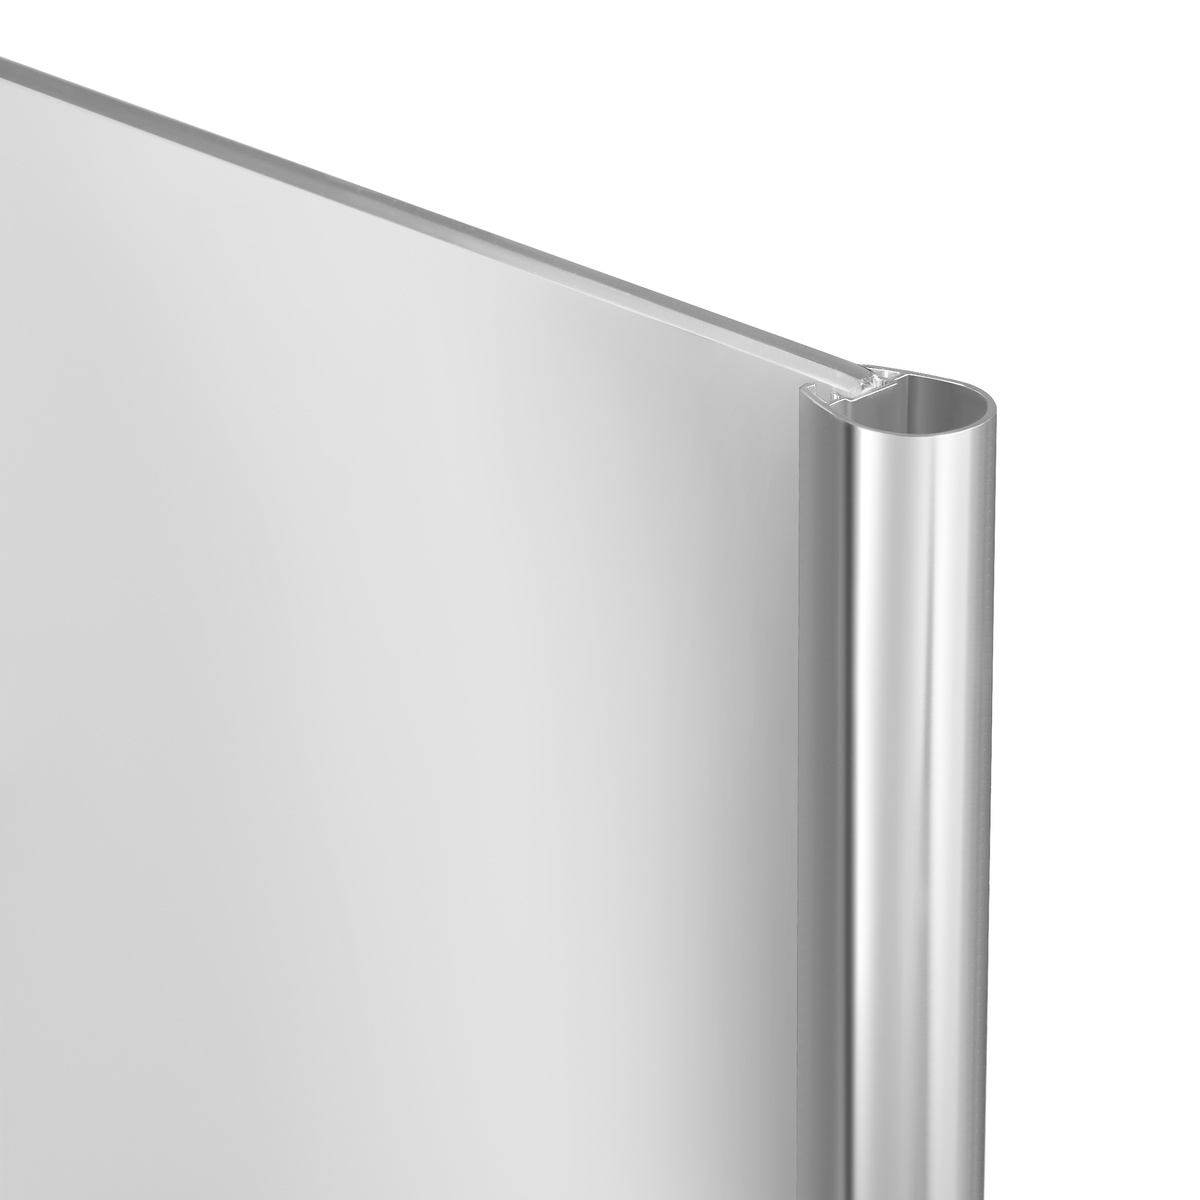 Шторка стеклянная для ванны двухсекционная распашная 142x119.5см LIDZ Brama стекло прозрачное 6мм профиль хром LBSS120140RCRMTR